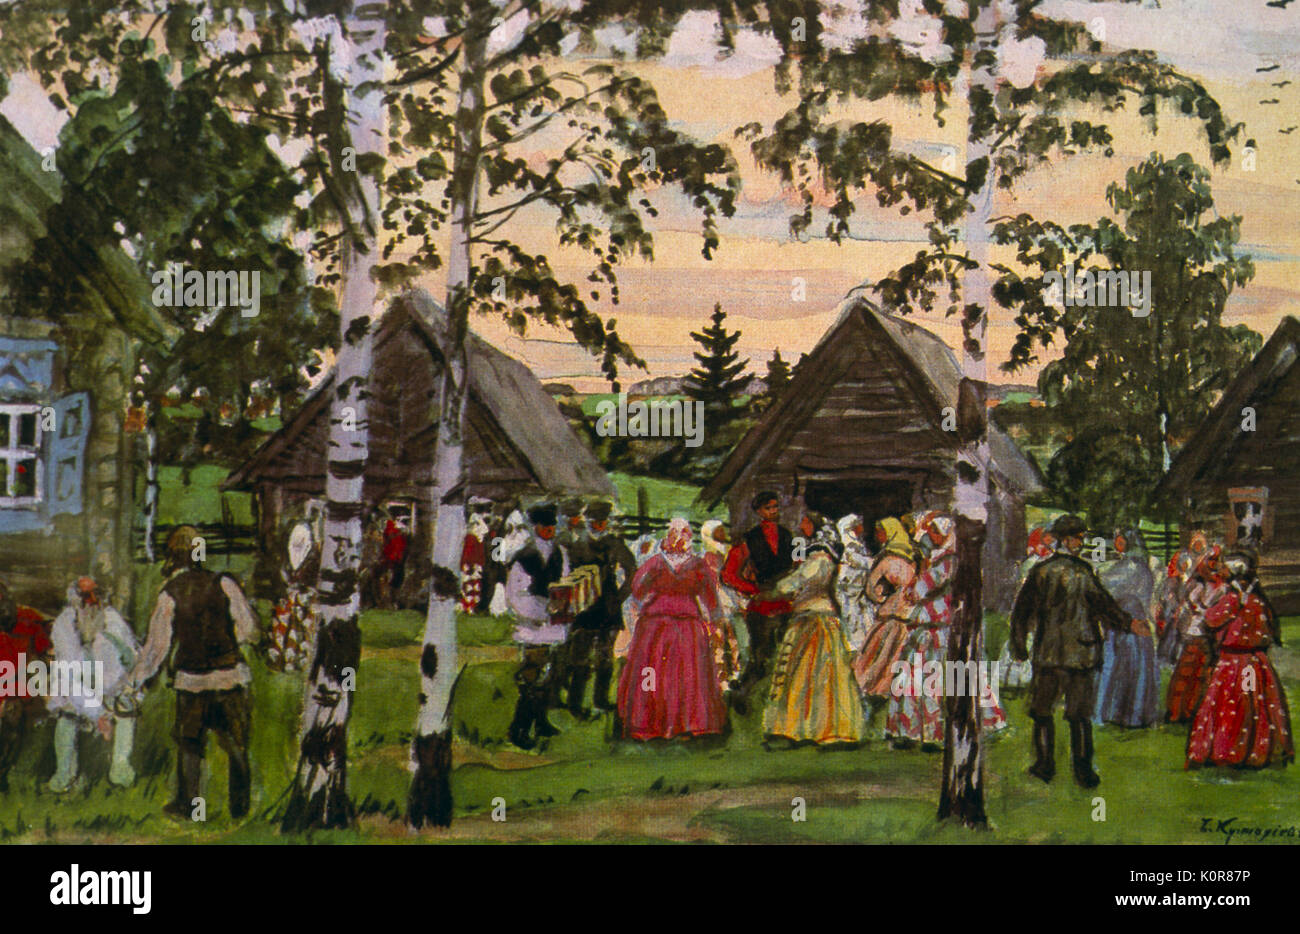 Il russo Round Dance 1912 dopo la verniciatura di Boris Kustodiev 7 Marzo 1878 - 28 maggio 1927. La Russia Folk Dance - contadini dancing nei pressi di case sul verde del villaggio. Foto Stock